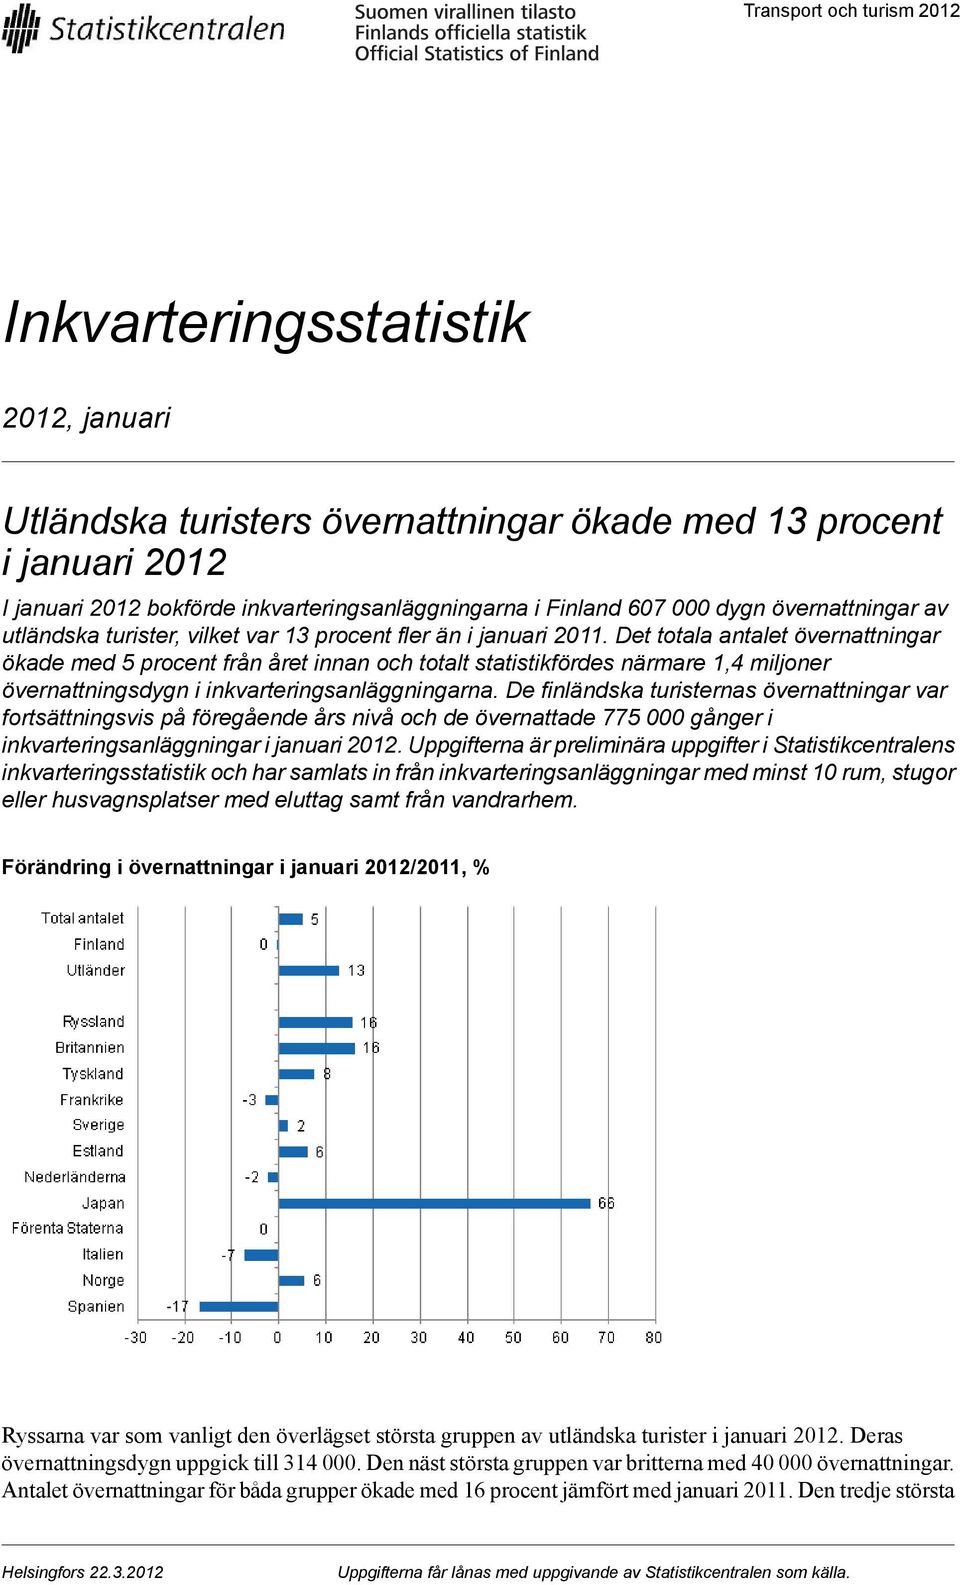 1,4 miljoner övernattningsdygn i inkvarteringsanläggningarna De finländska turisternas övernattningar var fortsättningsvis på föregående års nivå och de övernattade 5 000 gånger i